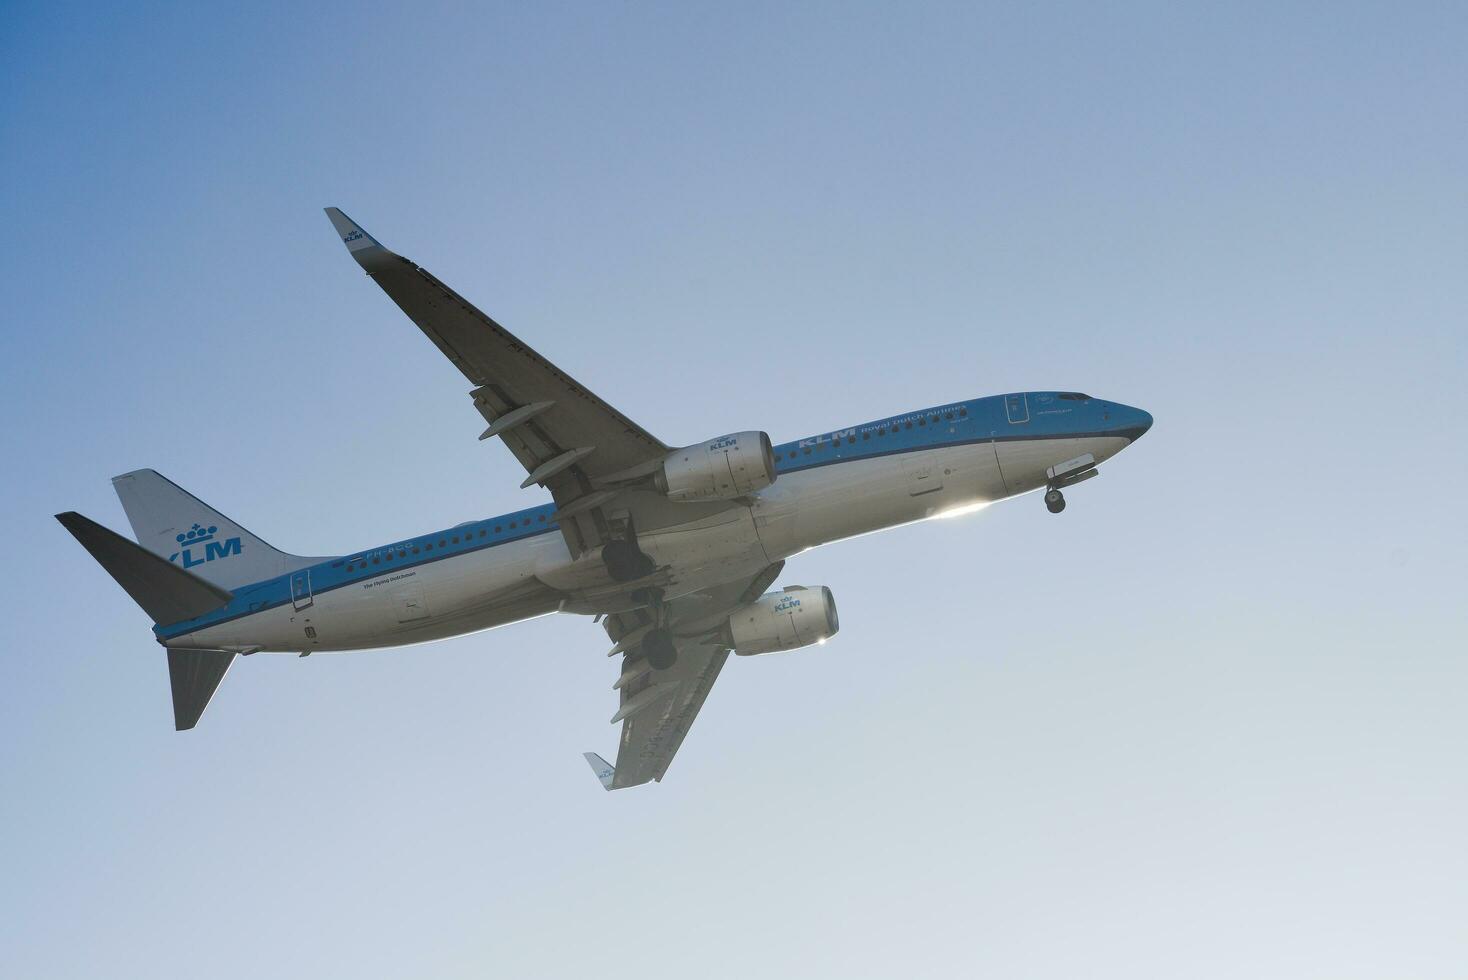 holandês companhia klm com aeronave boeing 737-8k2 Aproximando para terra às Lisboa internacional aeroporto contra azul céu foto